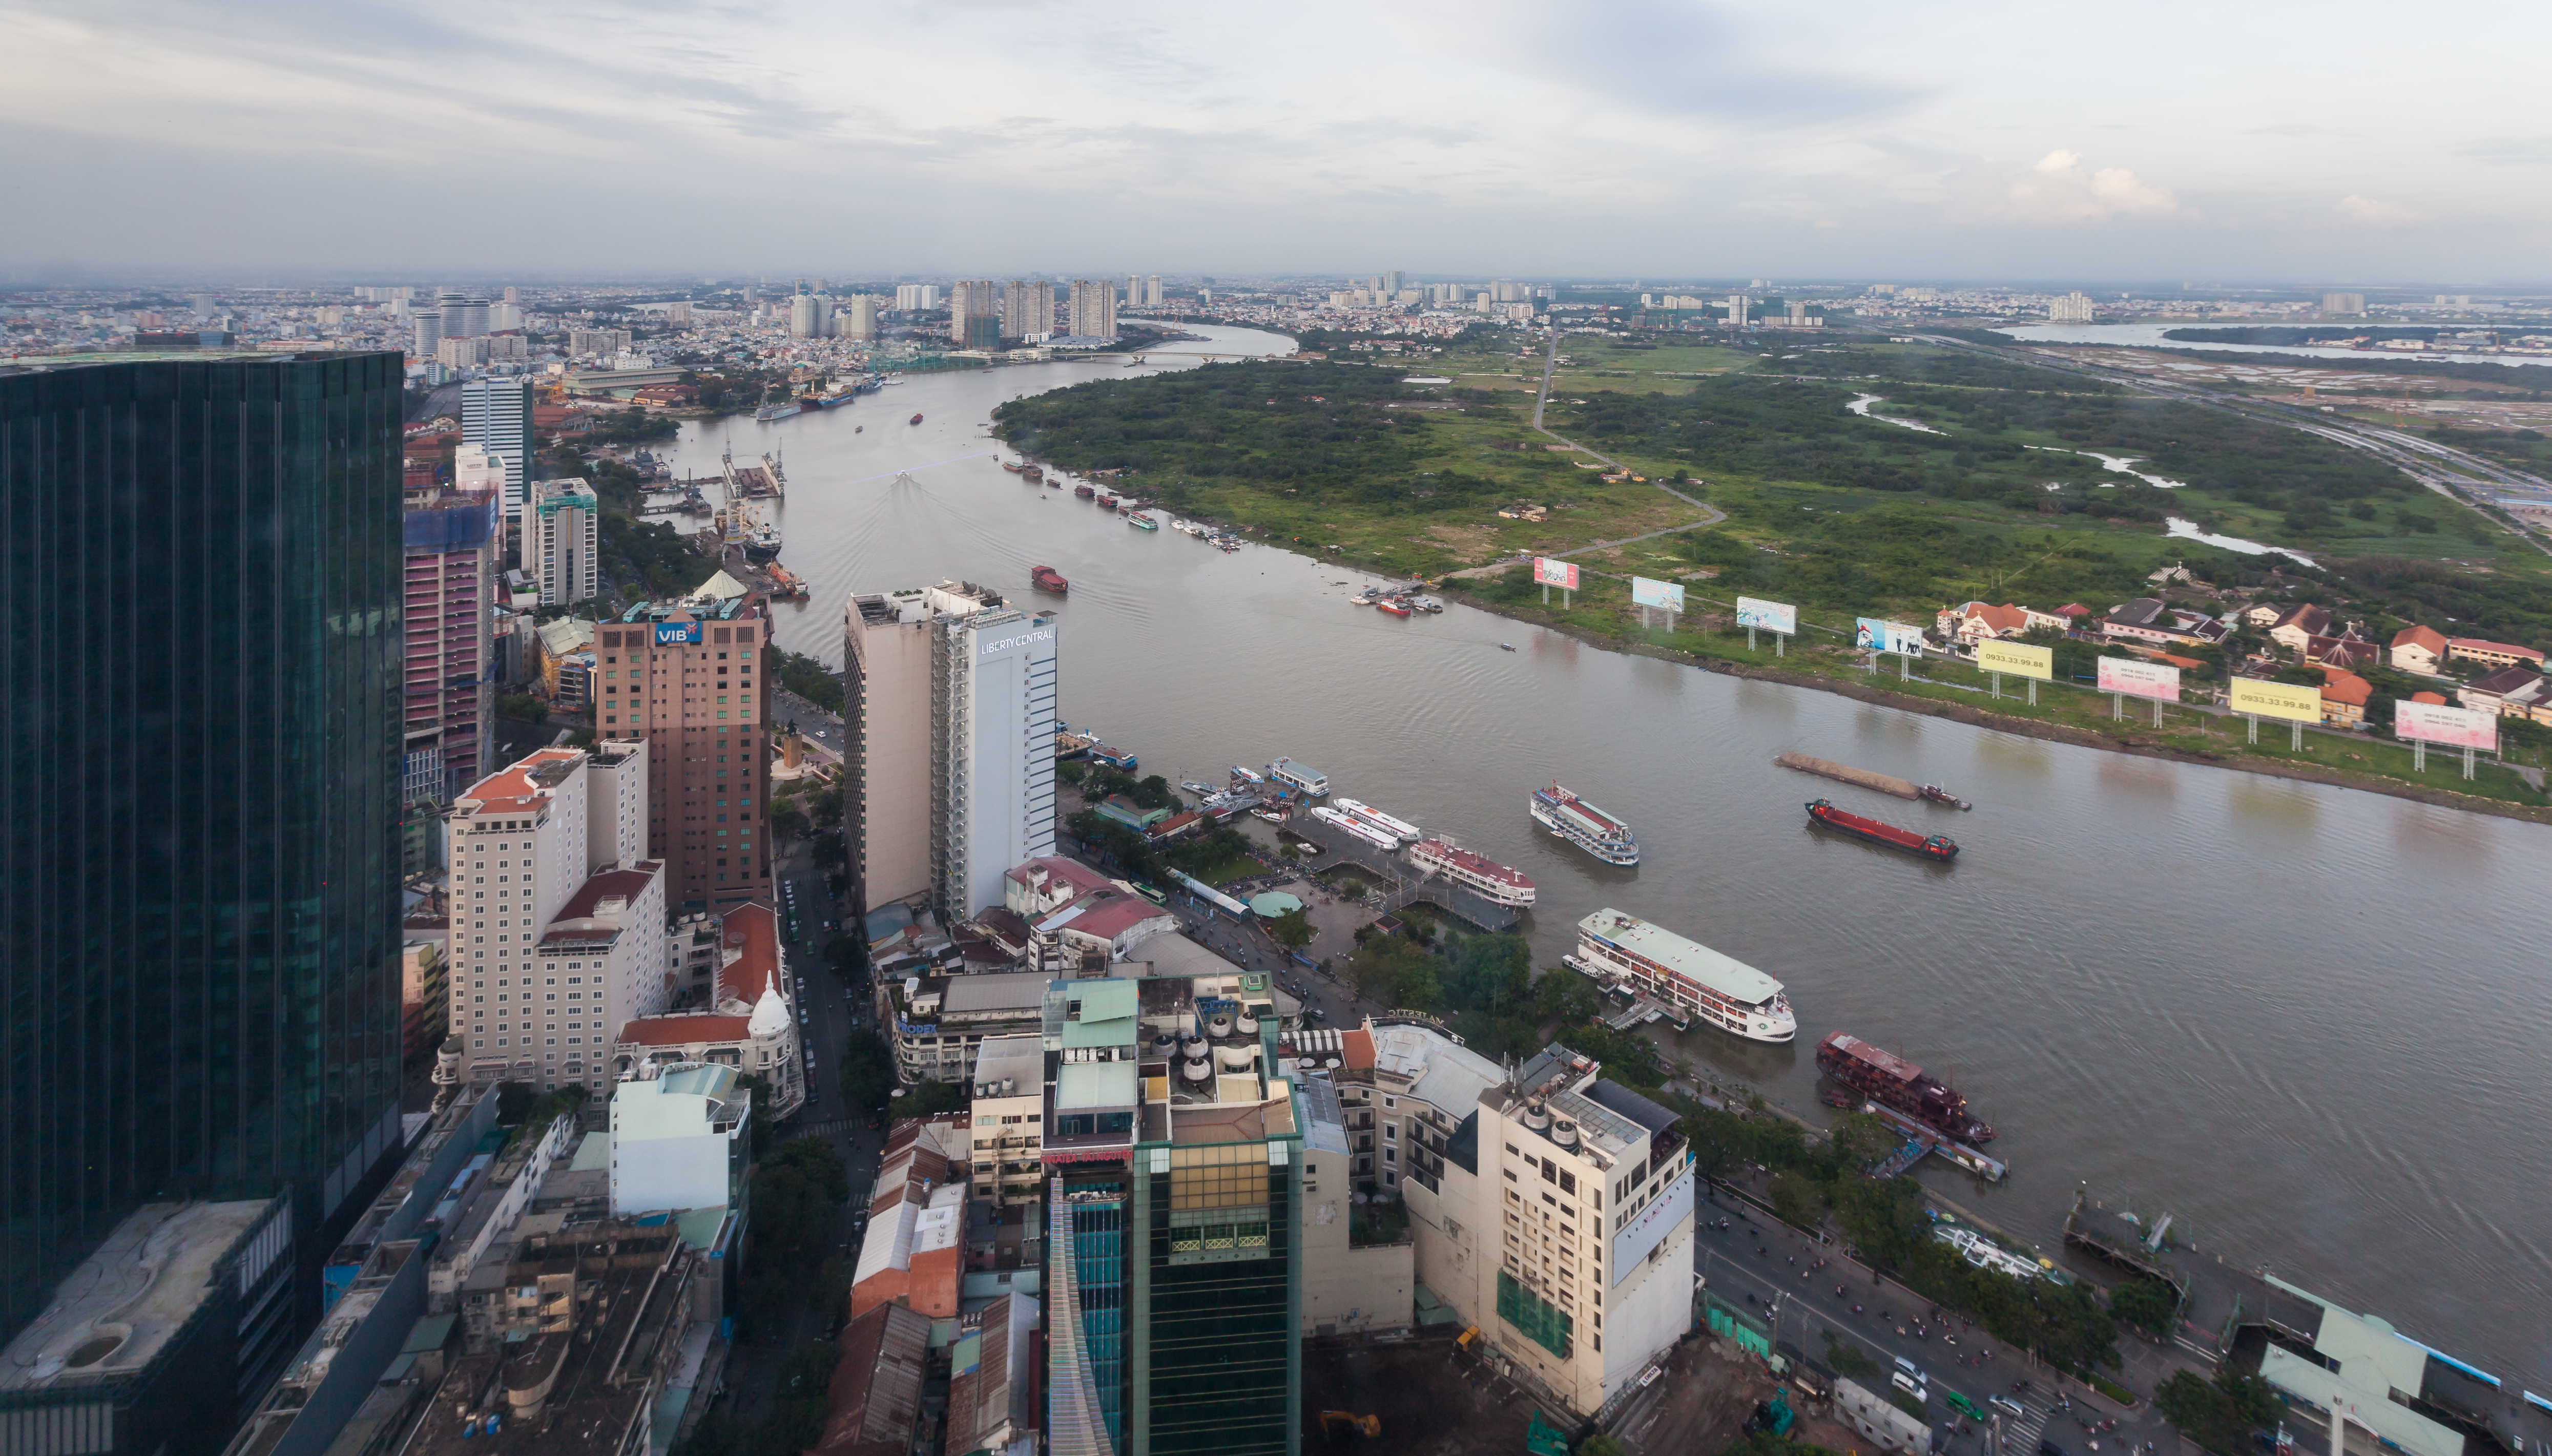 Vista de Ciudad Ho Chi Minh desde Bitexco Financial Tower, Vietnam, 2013-08-14, DD 04